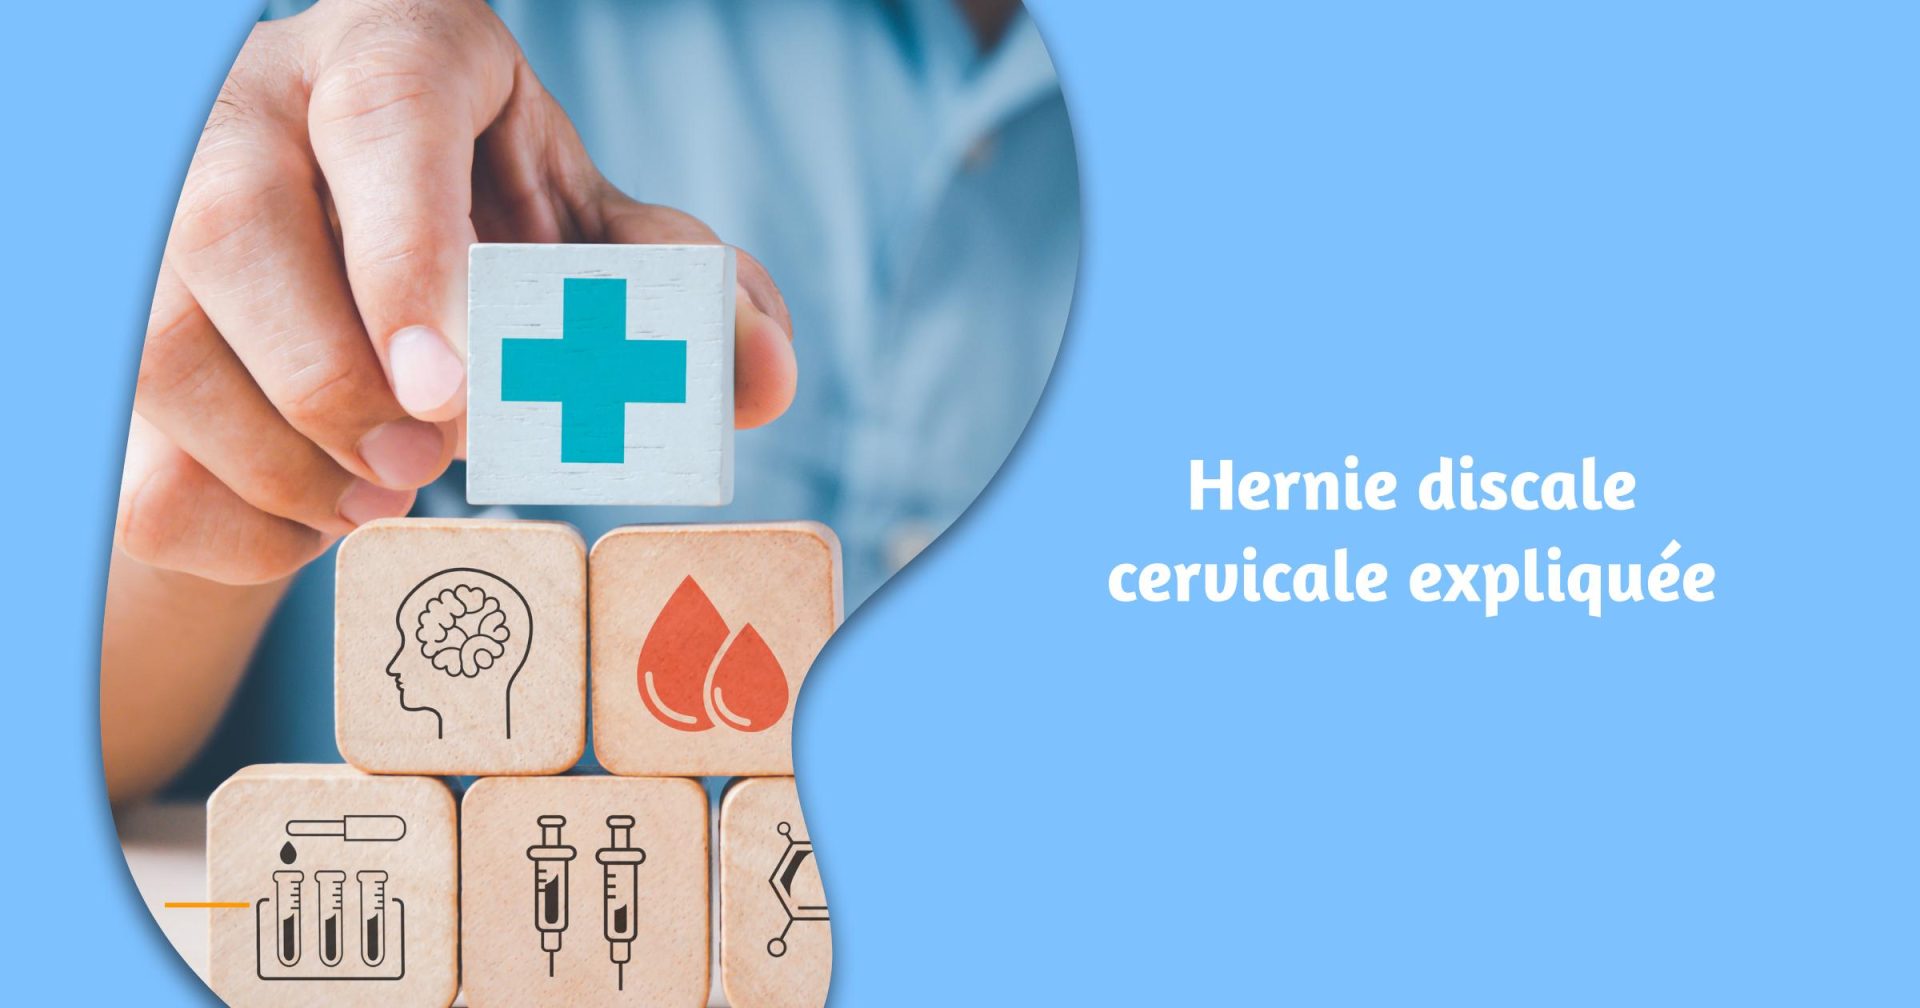 Hernie discale cervicale expliquée